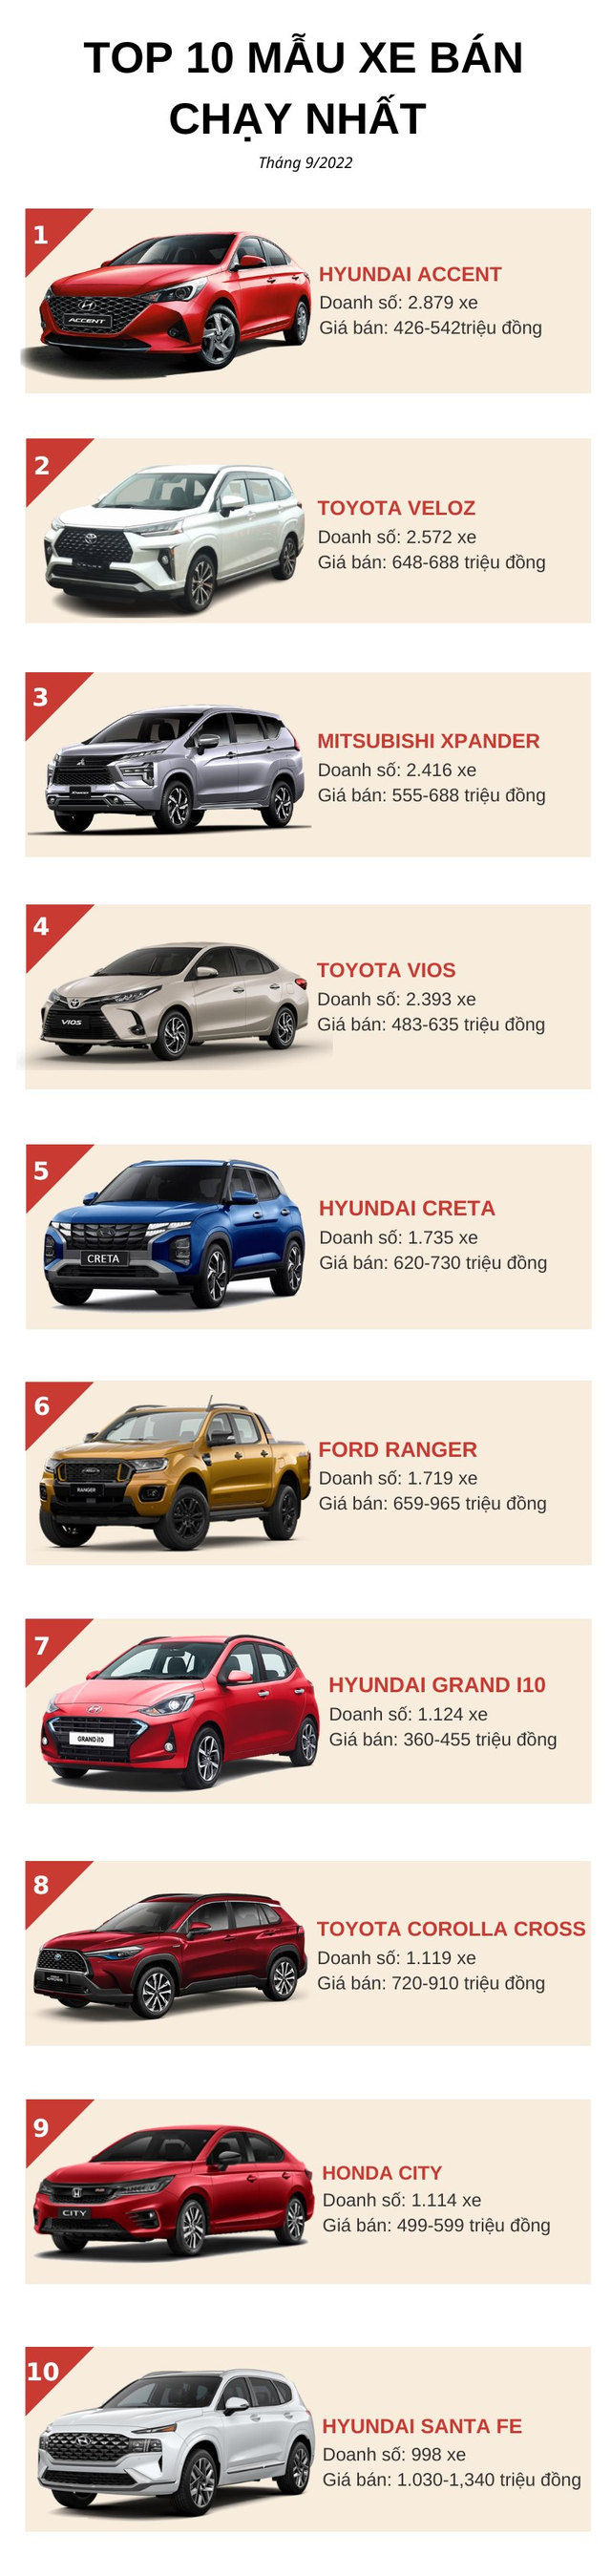 Top 10 ô tô bán chạy tháng 9/2022: Xe Hyundai bùng nổ, Toyota Veloz Cross bứt tốc - Ảnh 2.